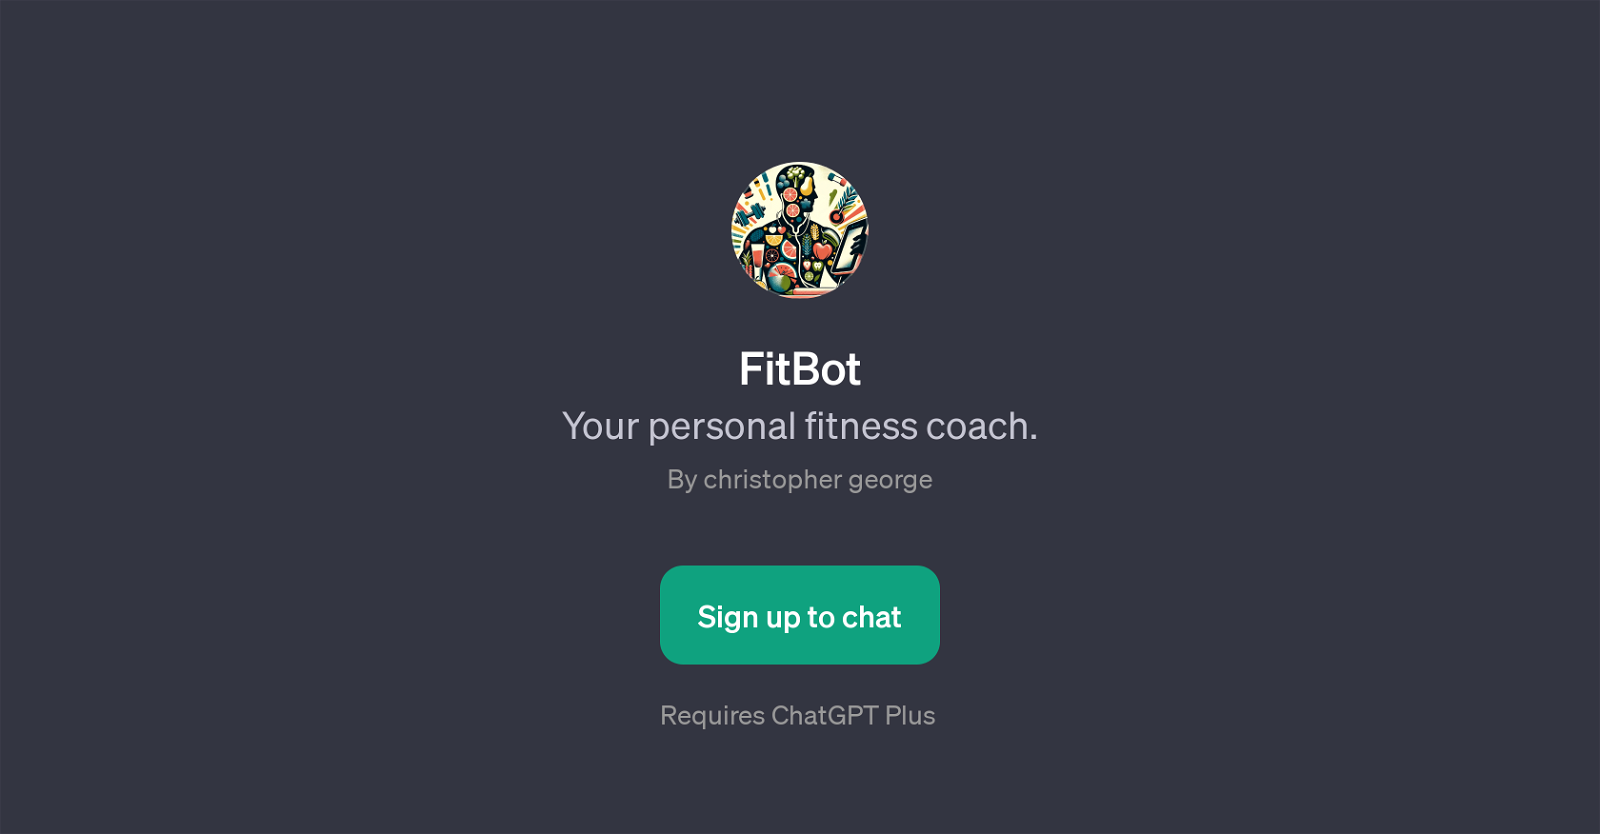 FitBot website